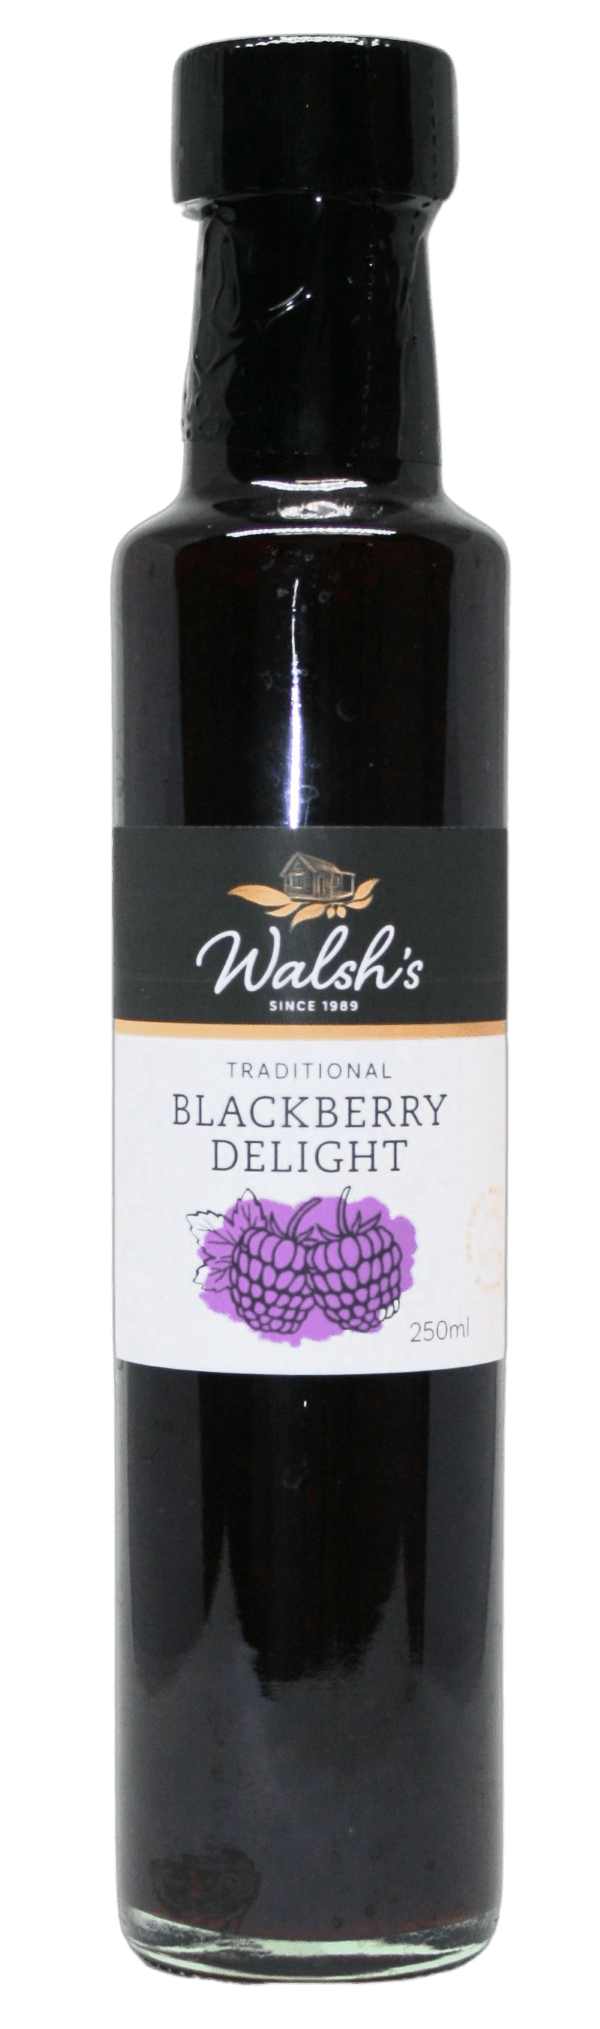 Walshs Blackberry Delight